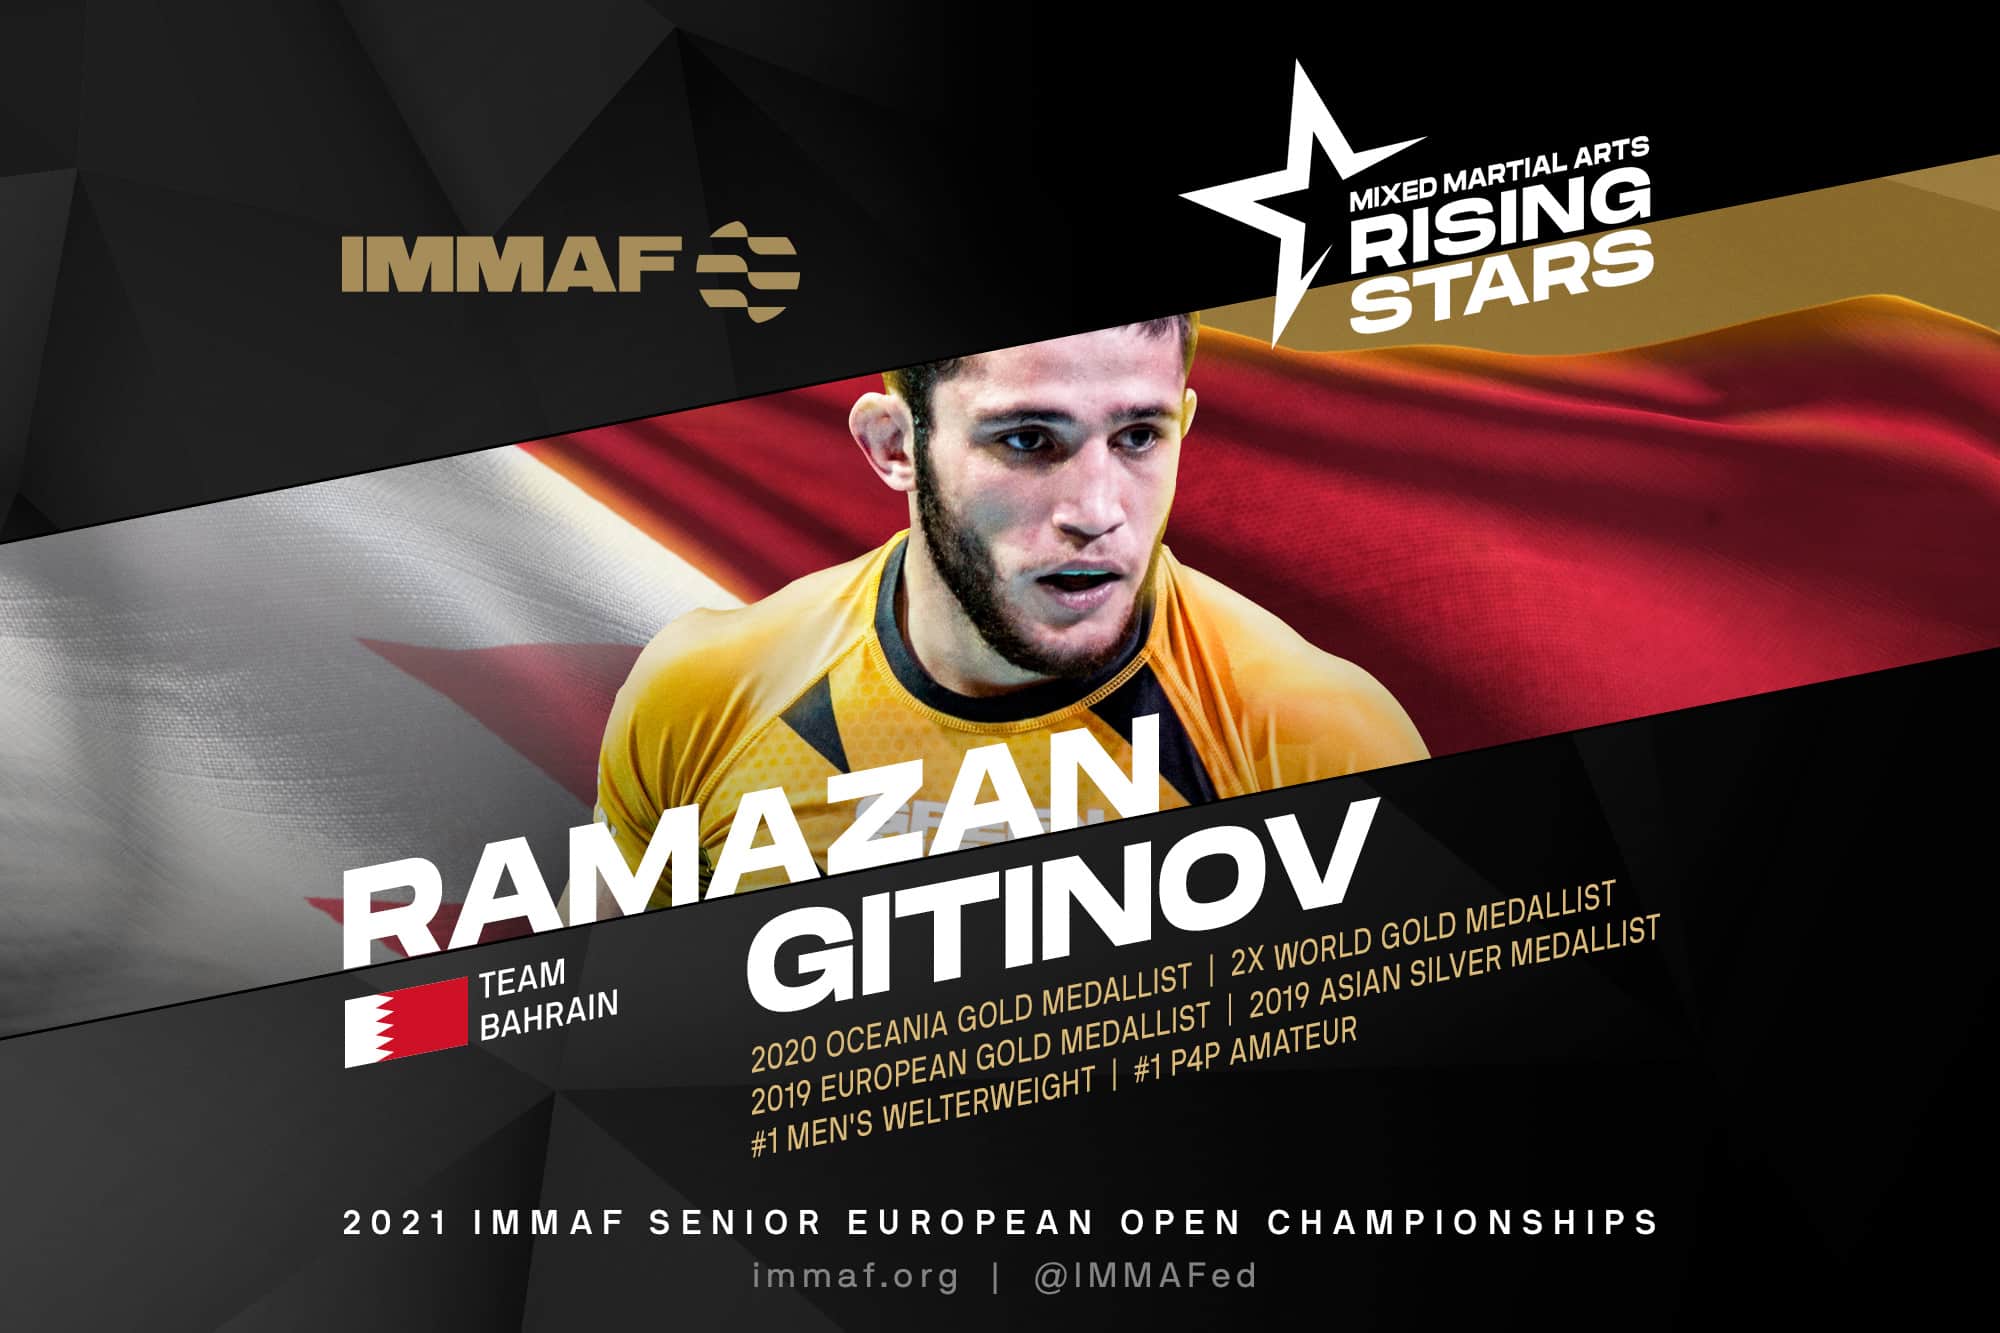 Rising Star Ramazan Gitinov targets another gold in Kazan